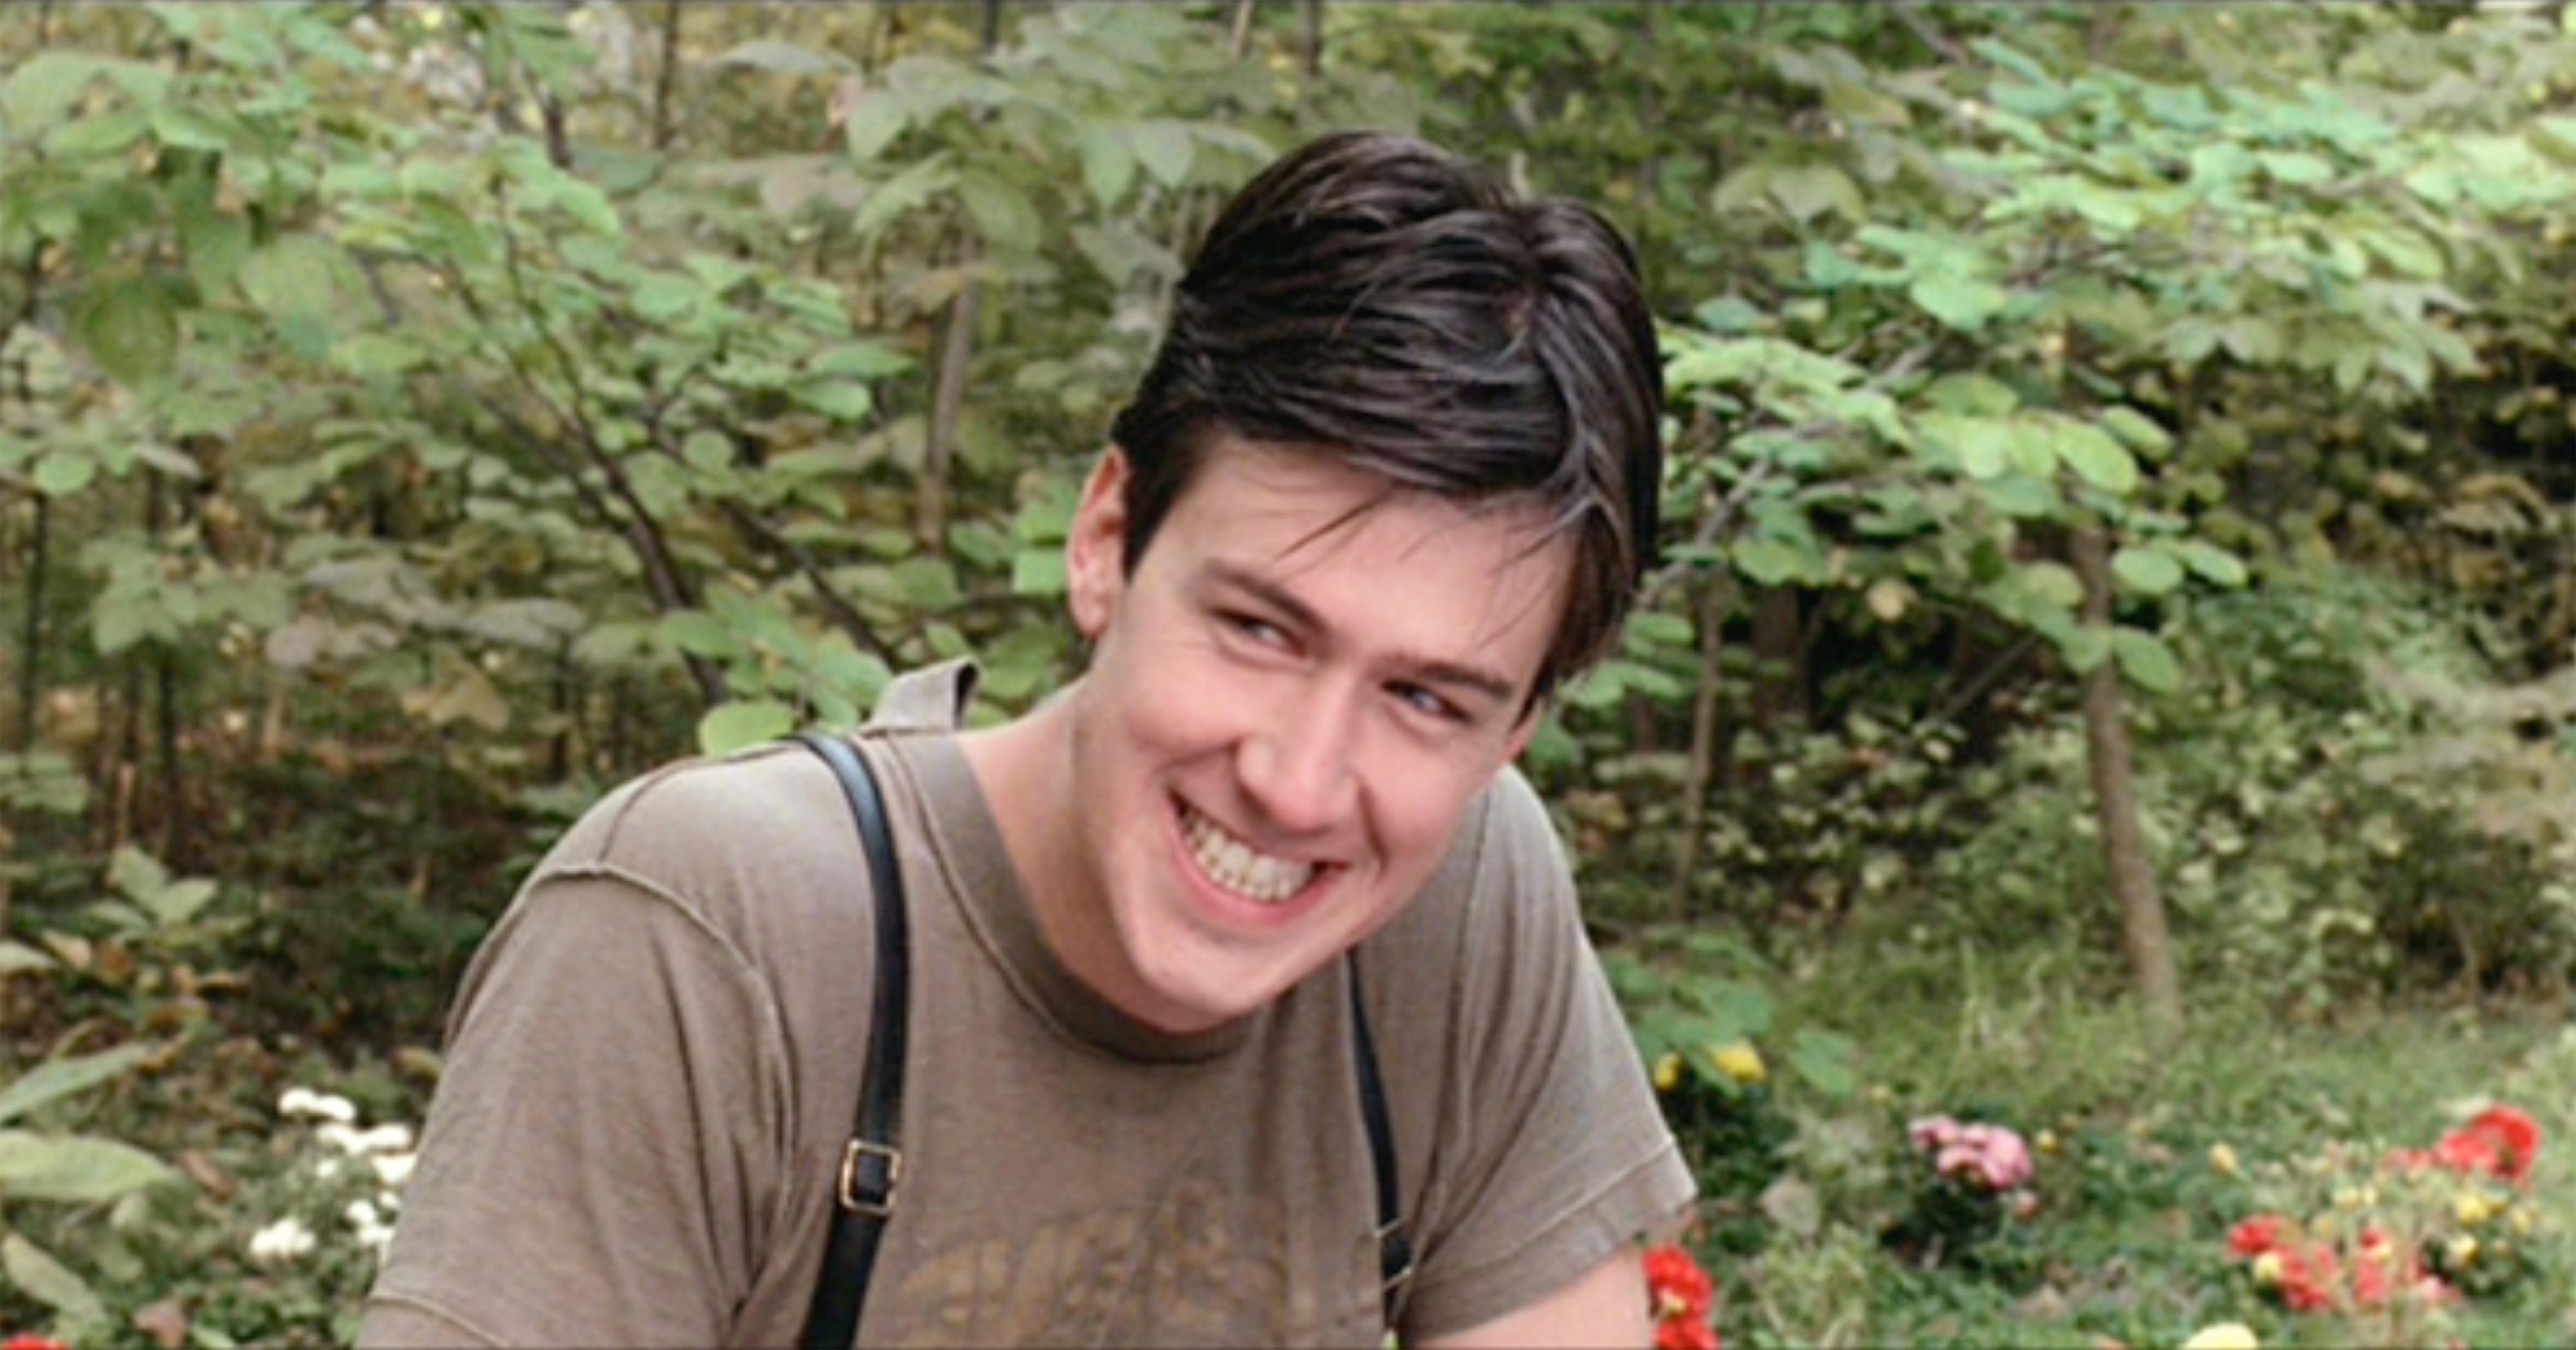 Ferris Bueller star Alan Ruck wearing a brown shirt in the film.